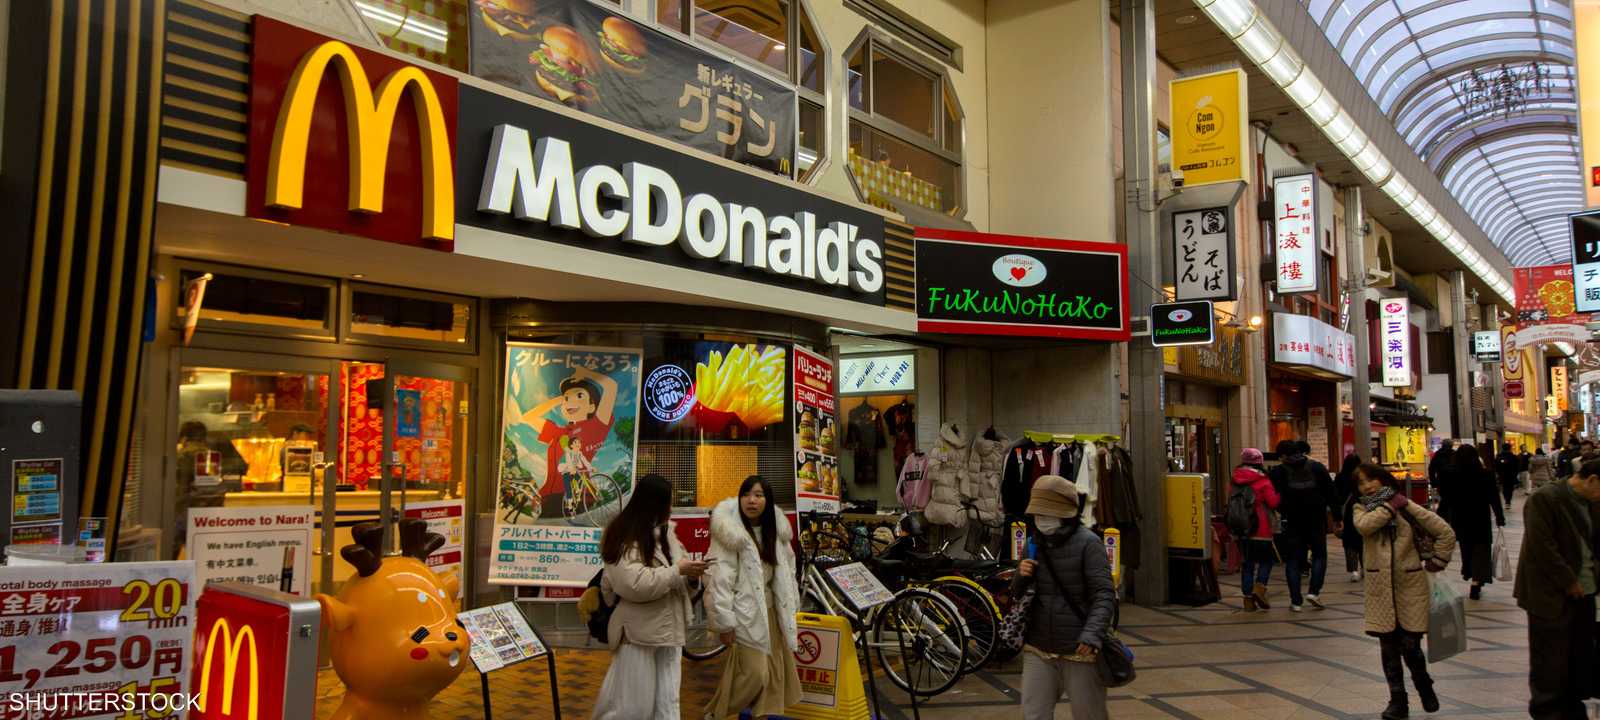 ماكدونالدز - اليابان